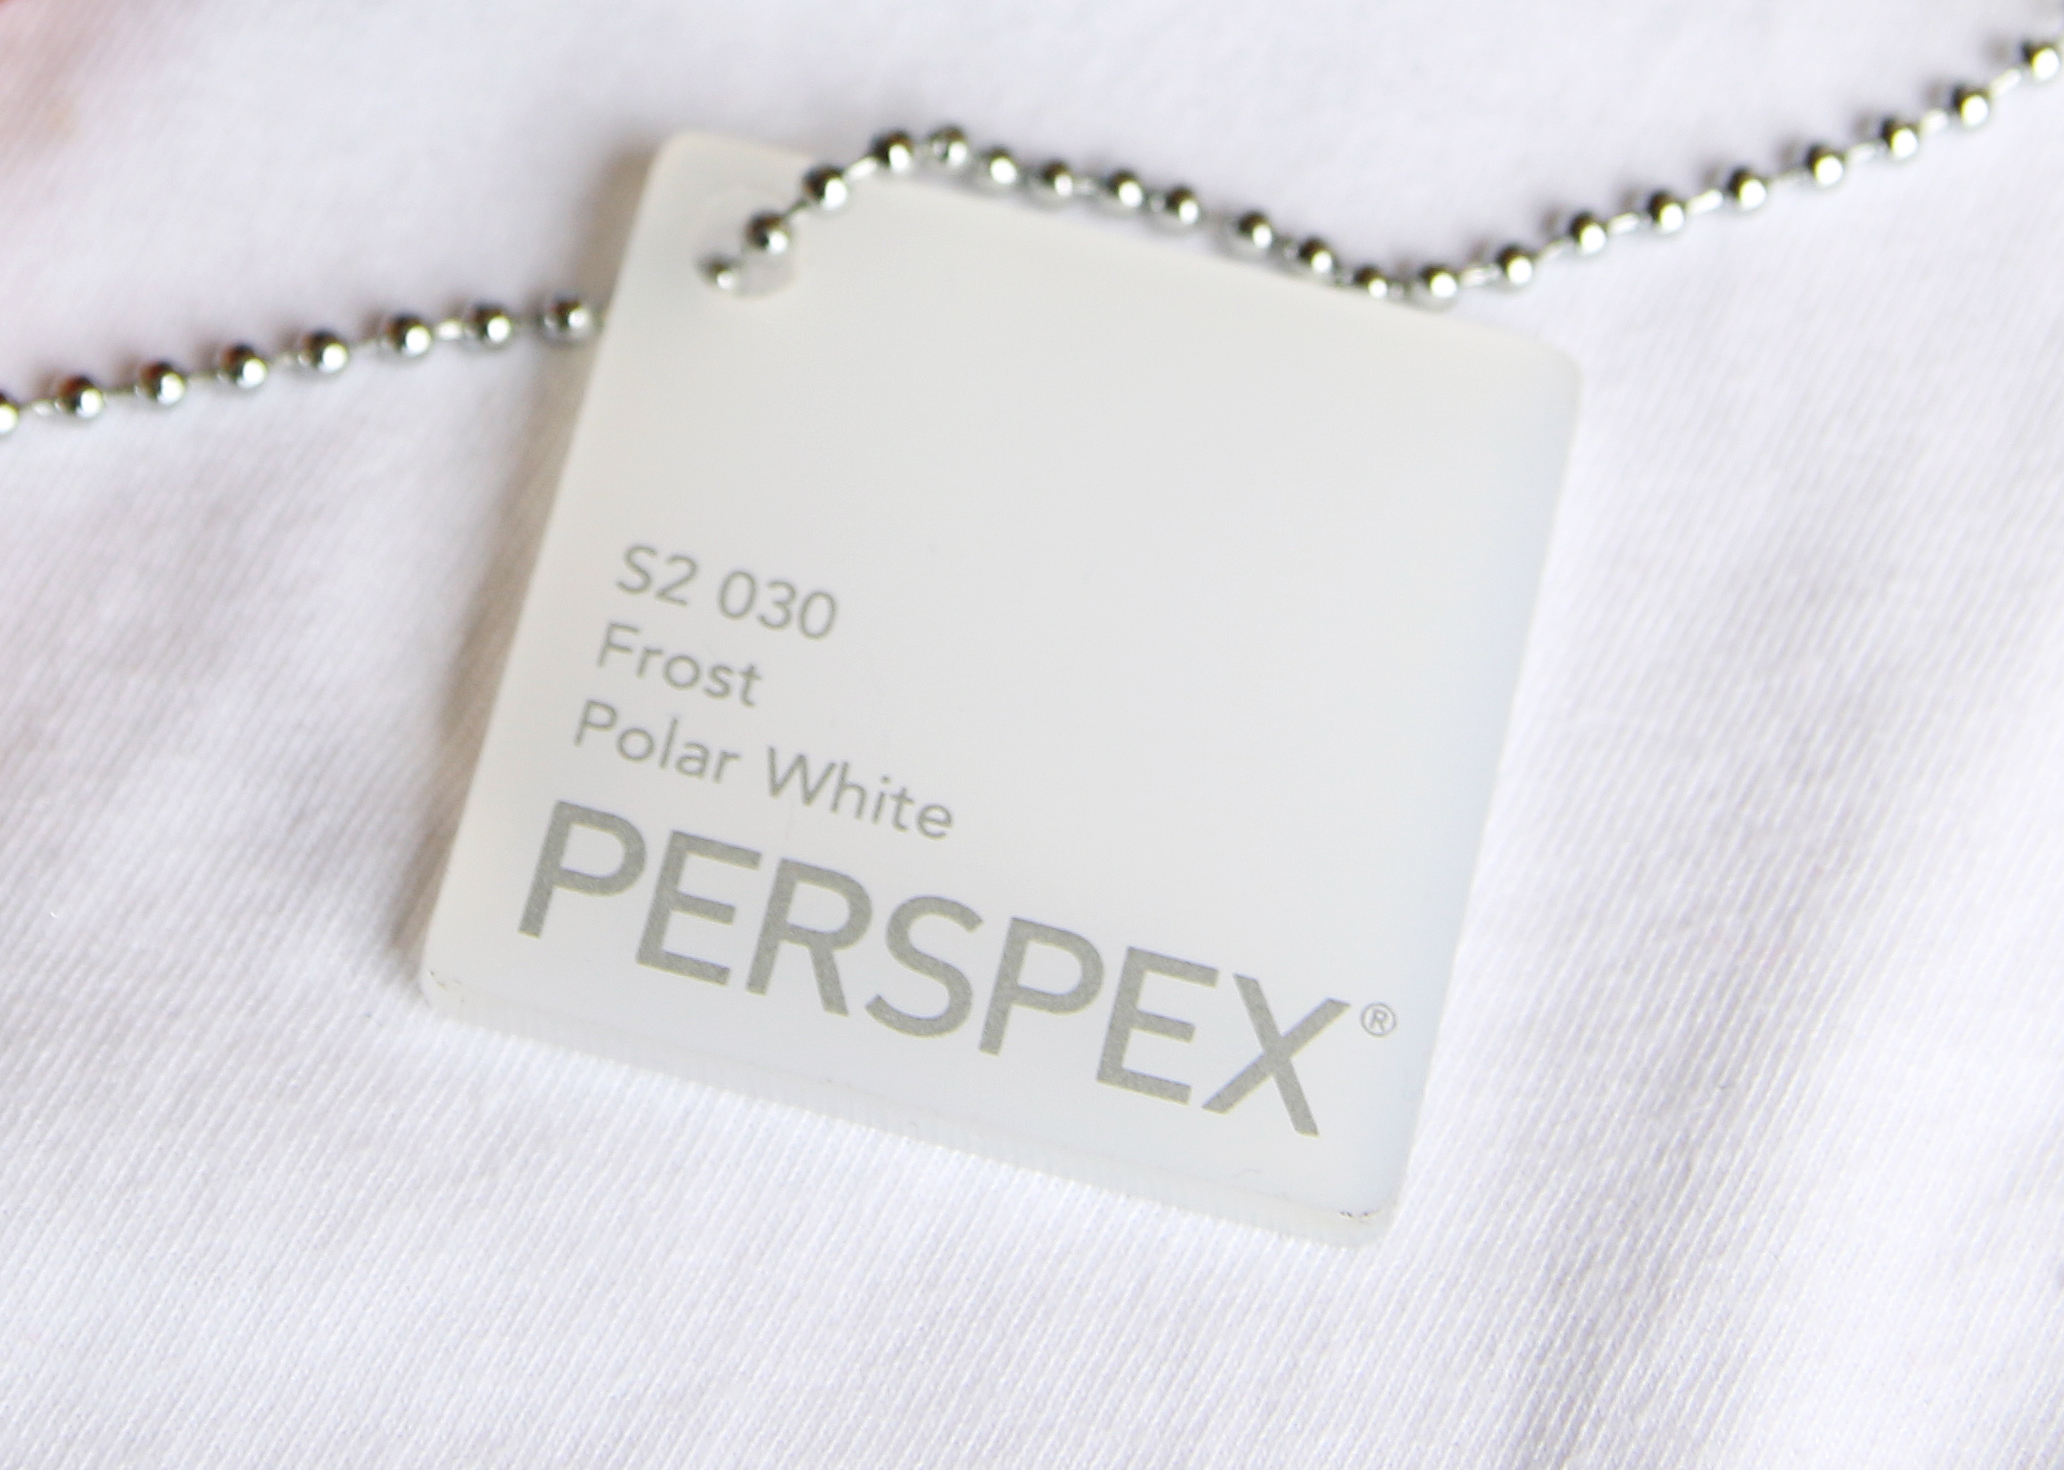 Acrylglas PERSPEX® GS, frost polar white S2 030 / transluzent